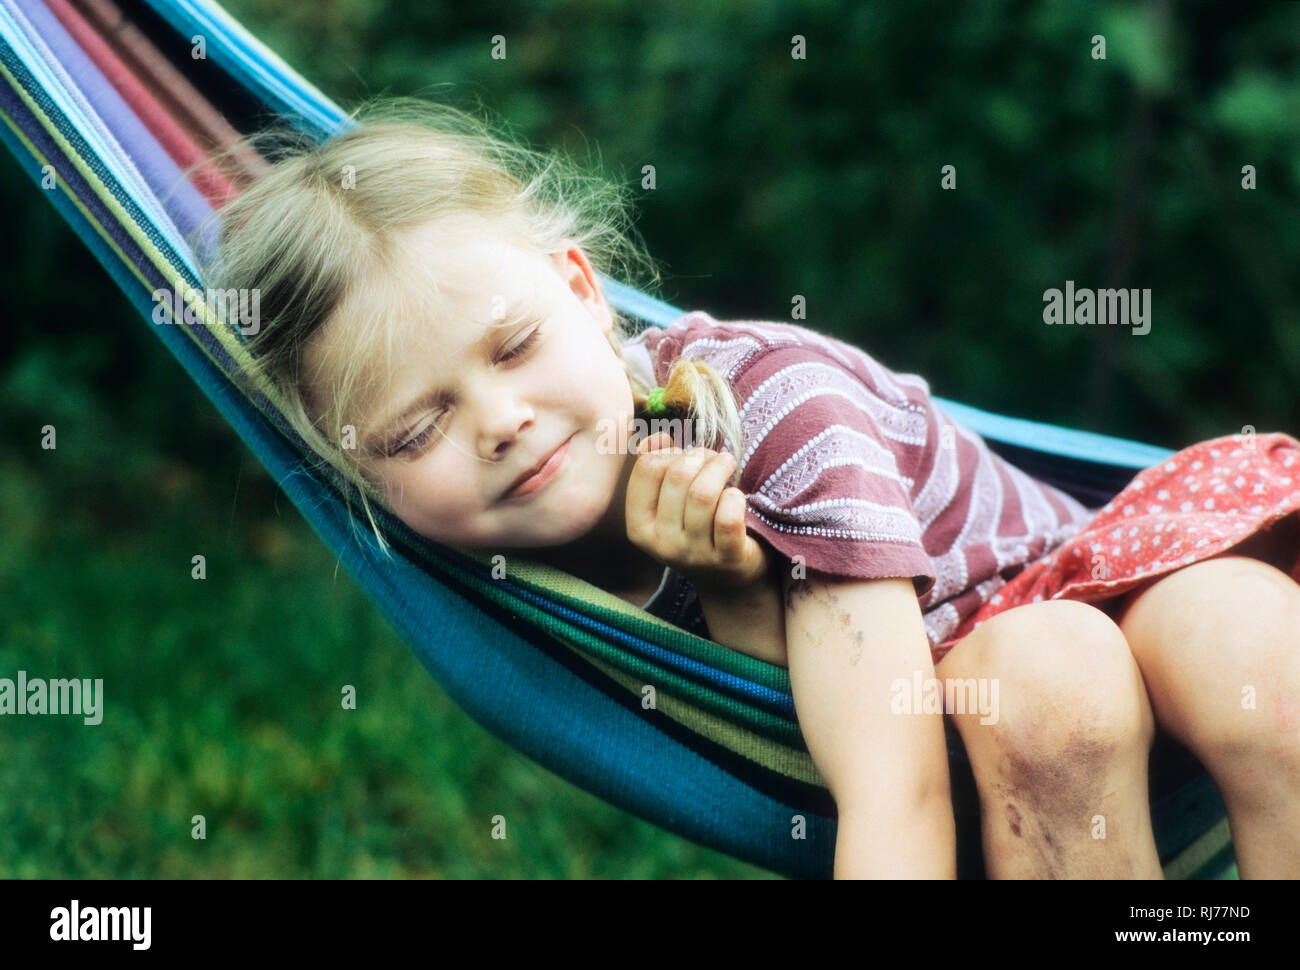 Mädchen, 6 Jahre alt, vom Spielen verschmutzt, liegt mit einem zufriedenen Lächeln in einer Hängematte Stock Photo